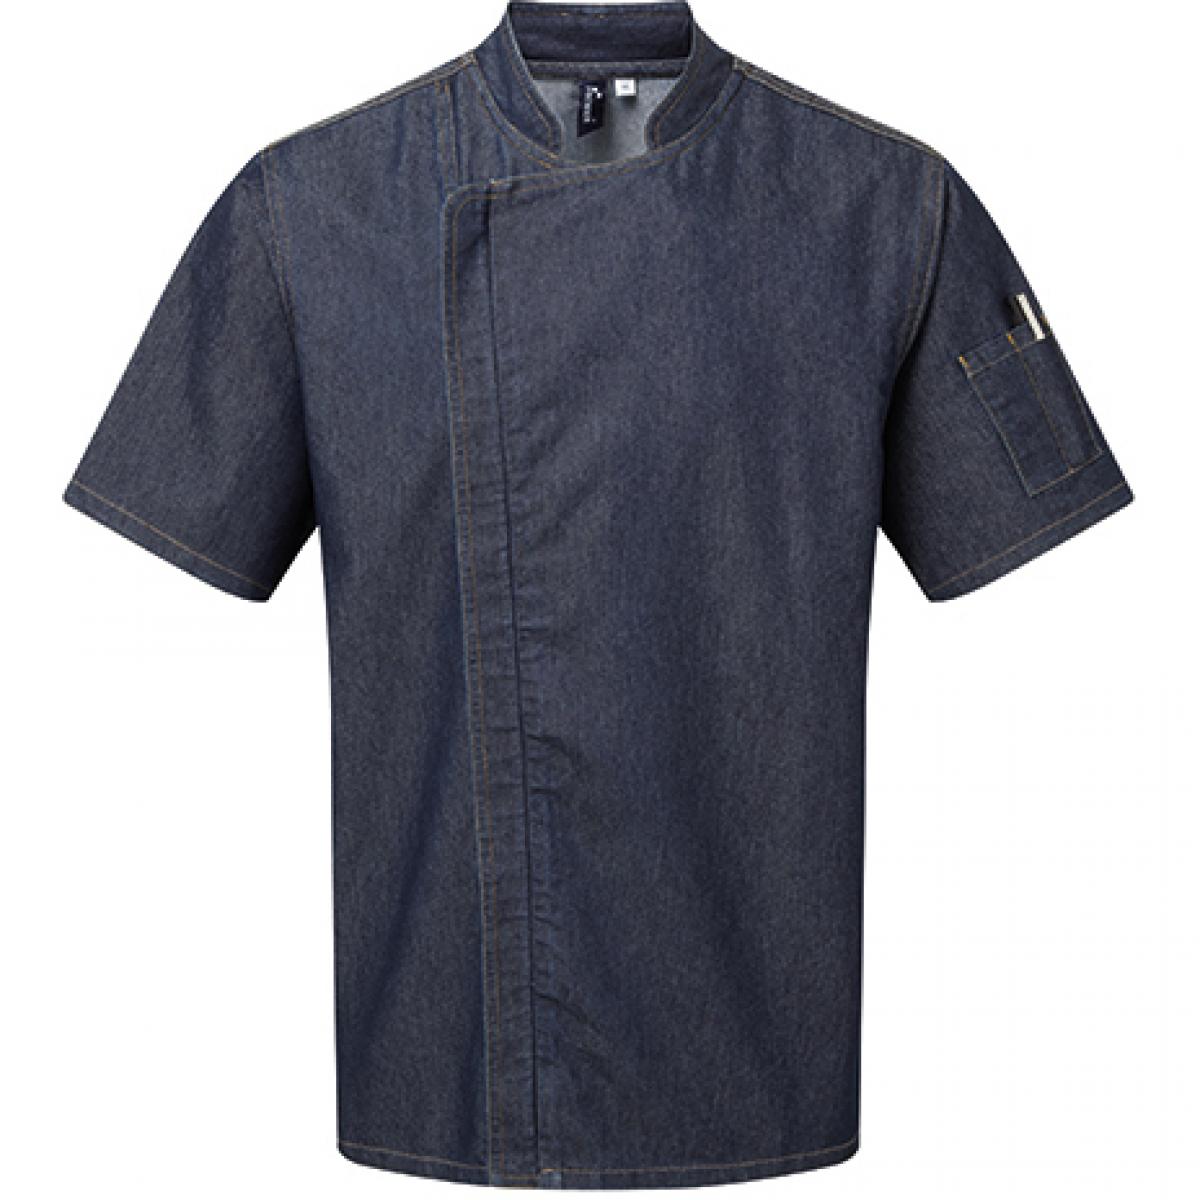 Hersteller: Premier Workwear Herstellernummer: PR906 Artikelbezeichnung: Kochjacke Chefs Zip-Close Short Sleeve Jacket Farbe: Indigo Denim (ca. Pantone 2380C)